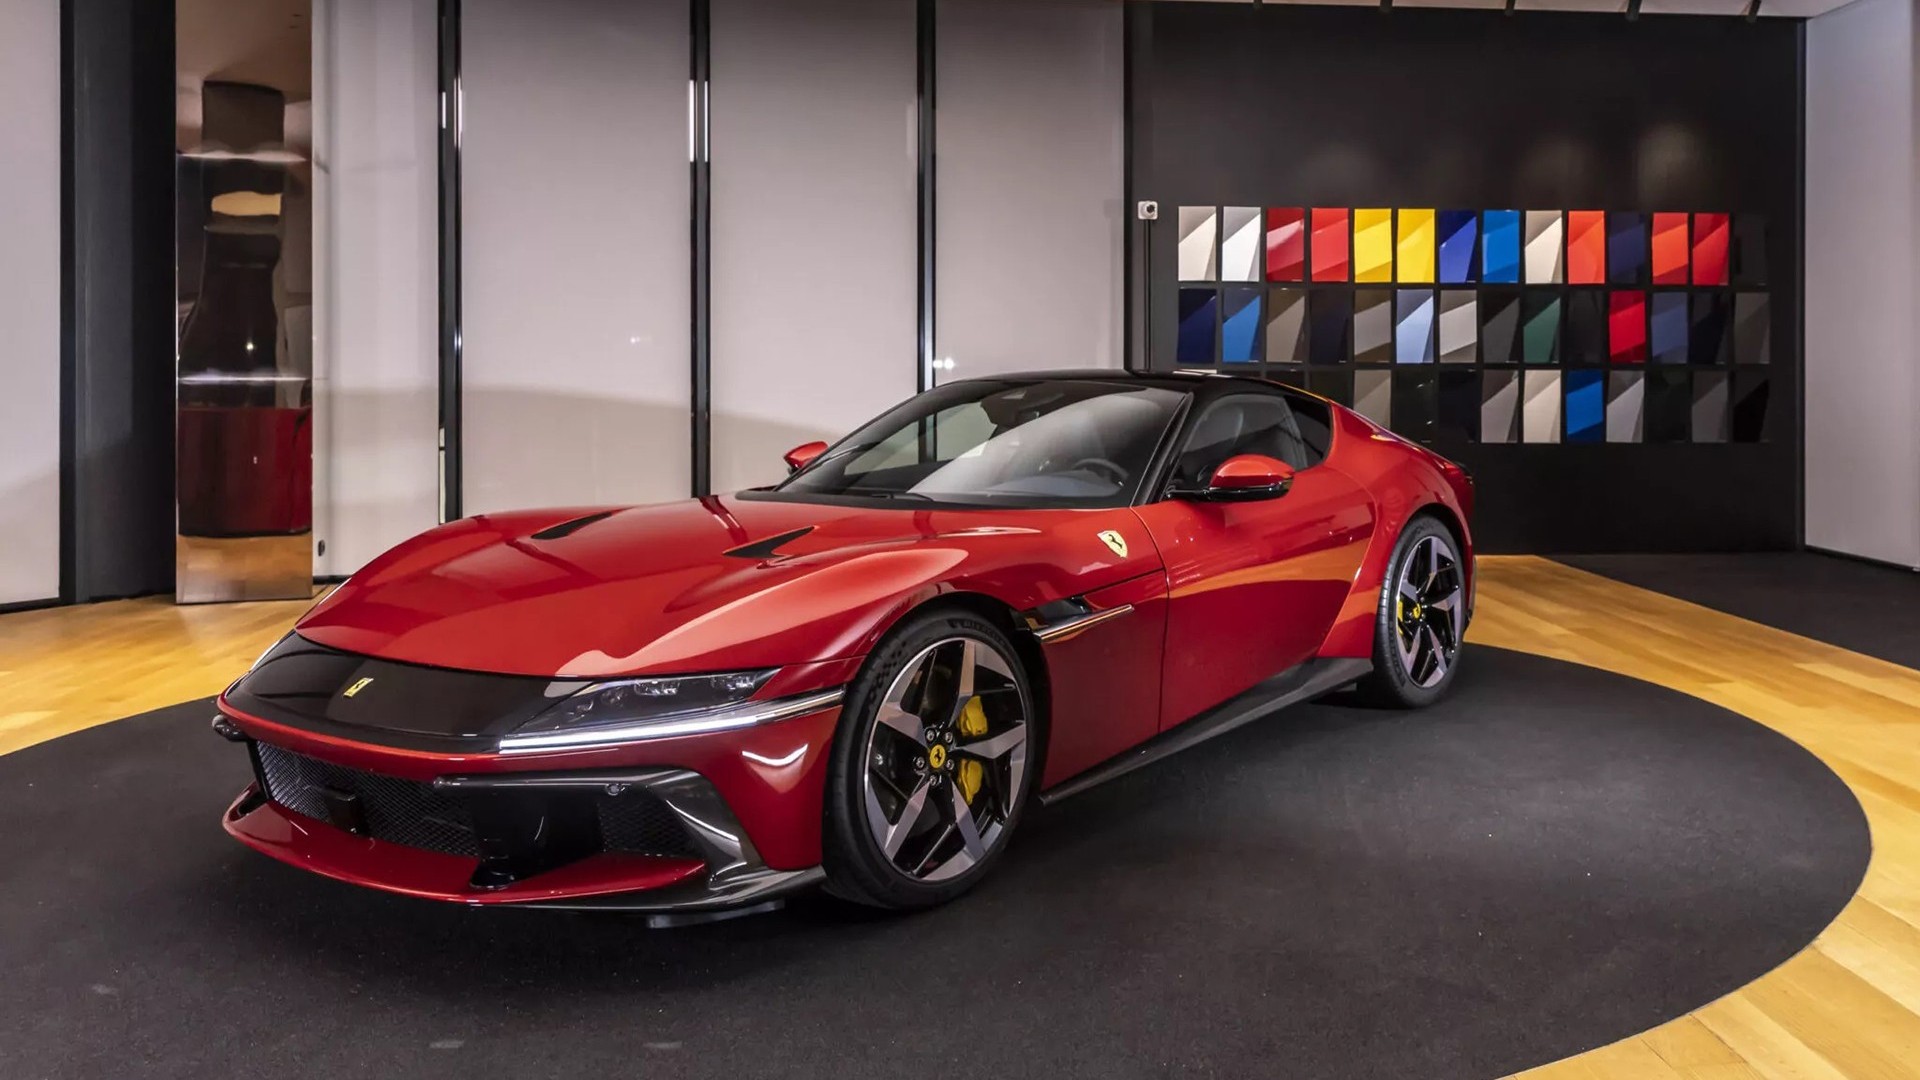 Cận cảnh Ferrari 12Cilindri được doanh nhân Quốc Cường 'chốt' mua qua Facebook